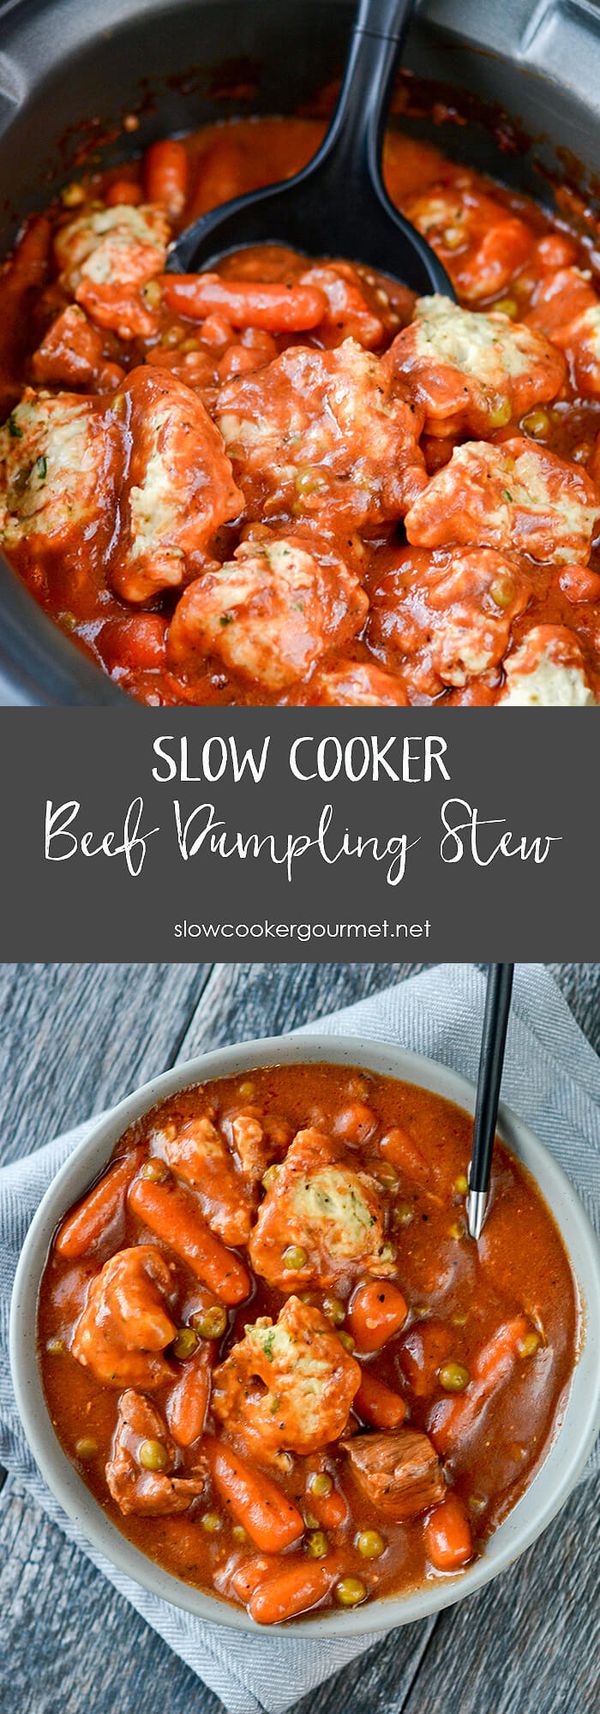 Slow Cooker Beef and Herbed Dumpling Stew